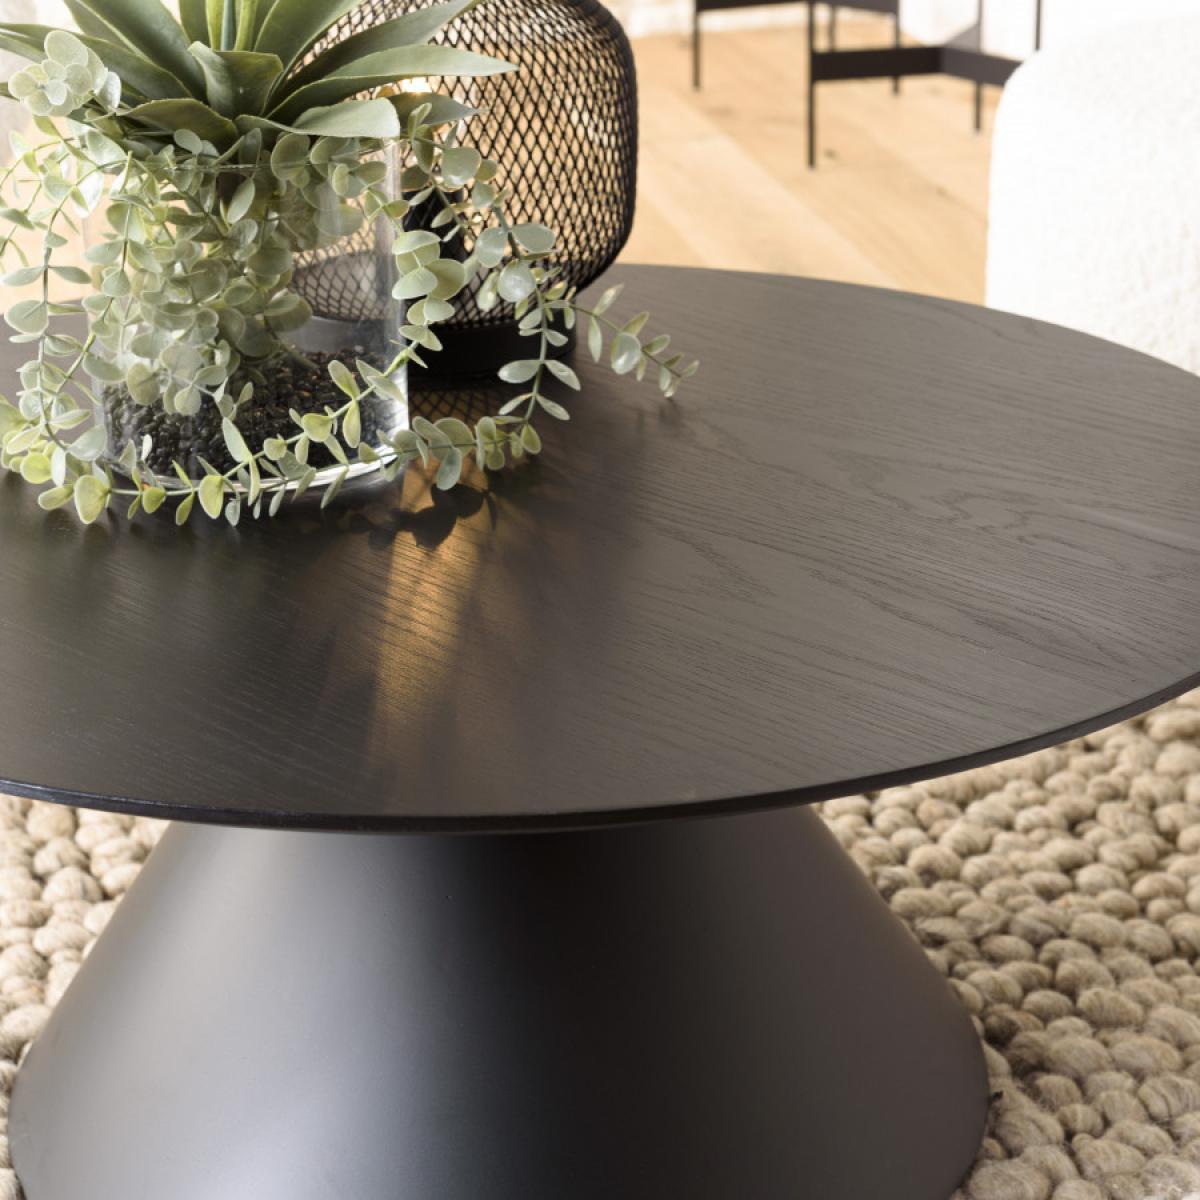 DALY - Table basse ronde noire 78x78cm pied conique métal